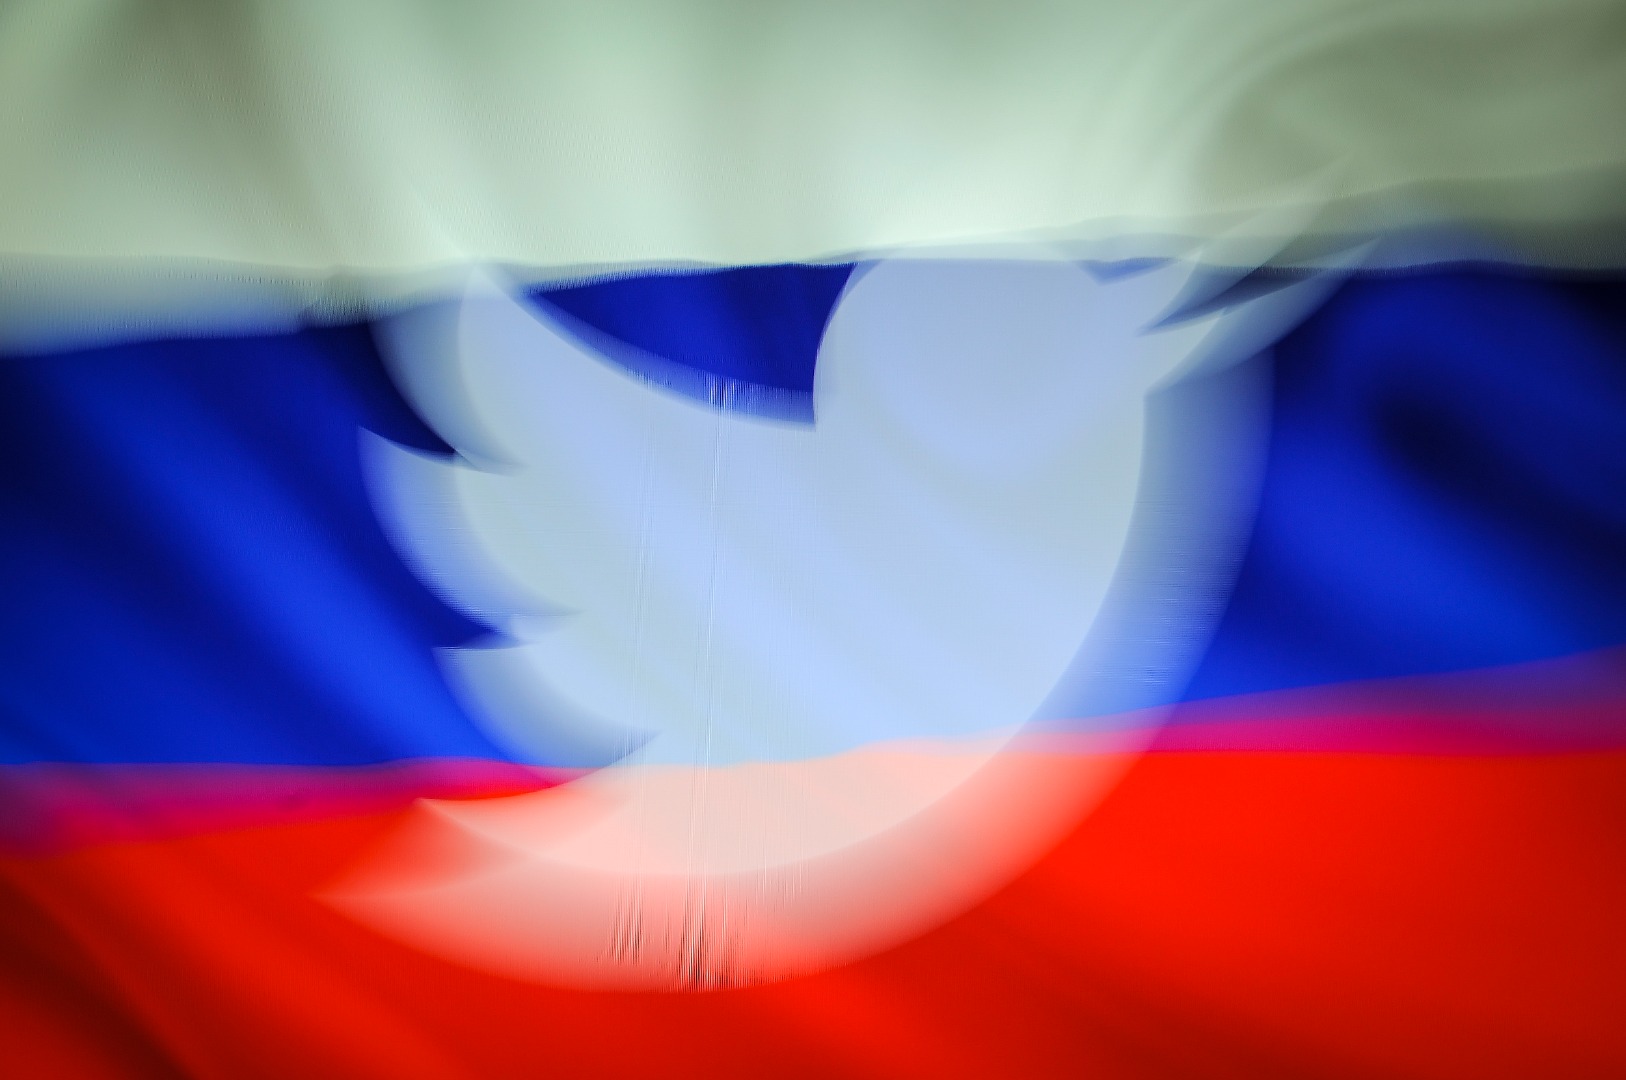 Twitter'da 14. ifşa: Rusya'nın ABD siyasetine müdahale ettiği iddiaları gerçek değil